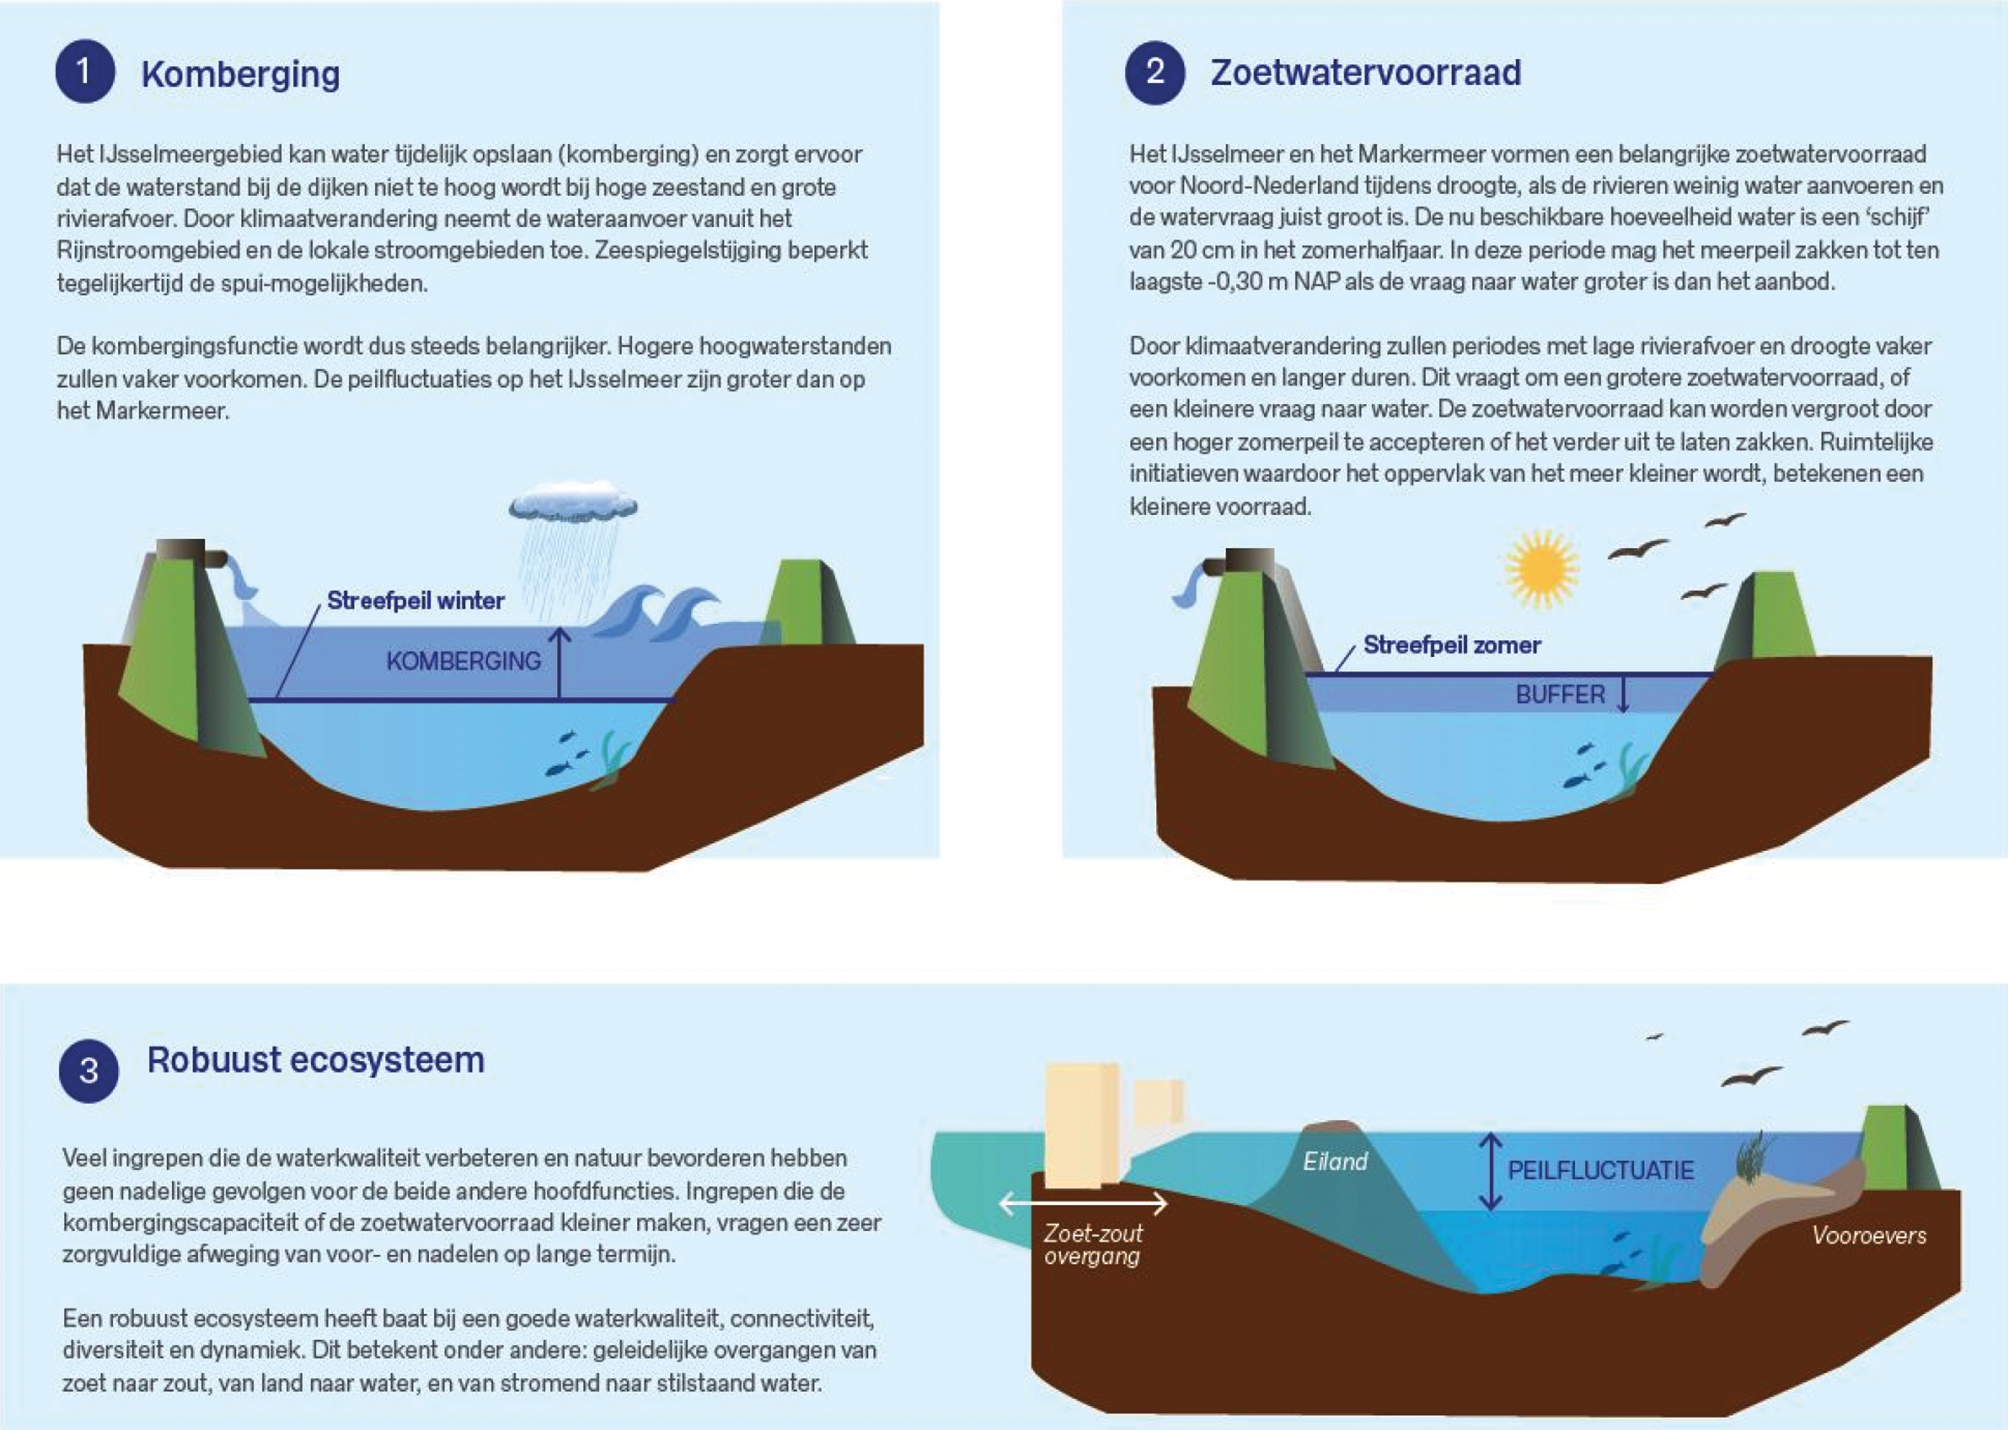 Figuur 2: Infographic basisfuncties IJsselmeergebied; Komberging, Zoetwatervoorraad en Robuust ecosysteem1